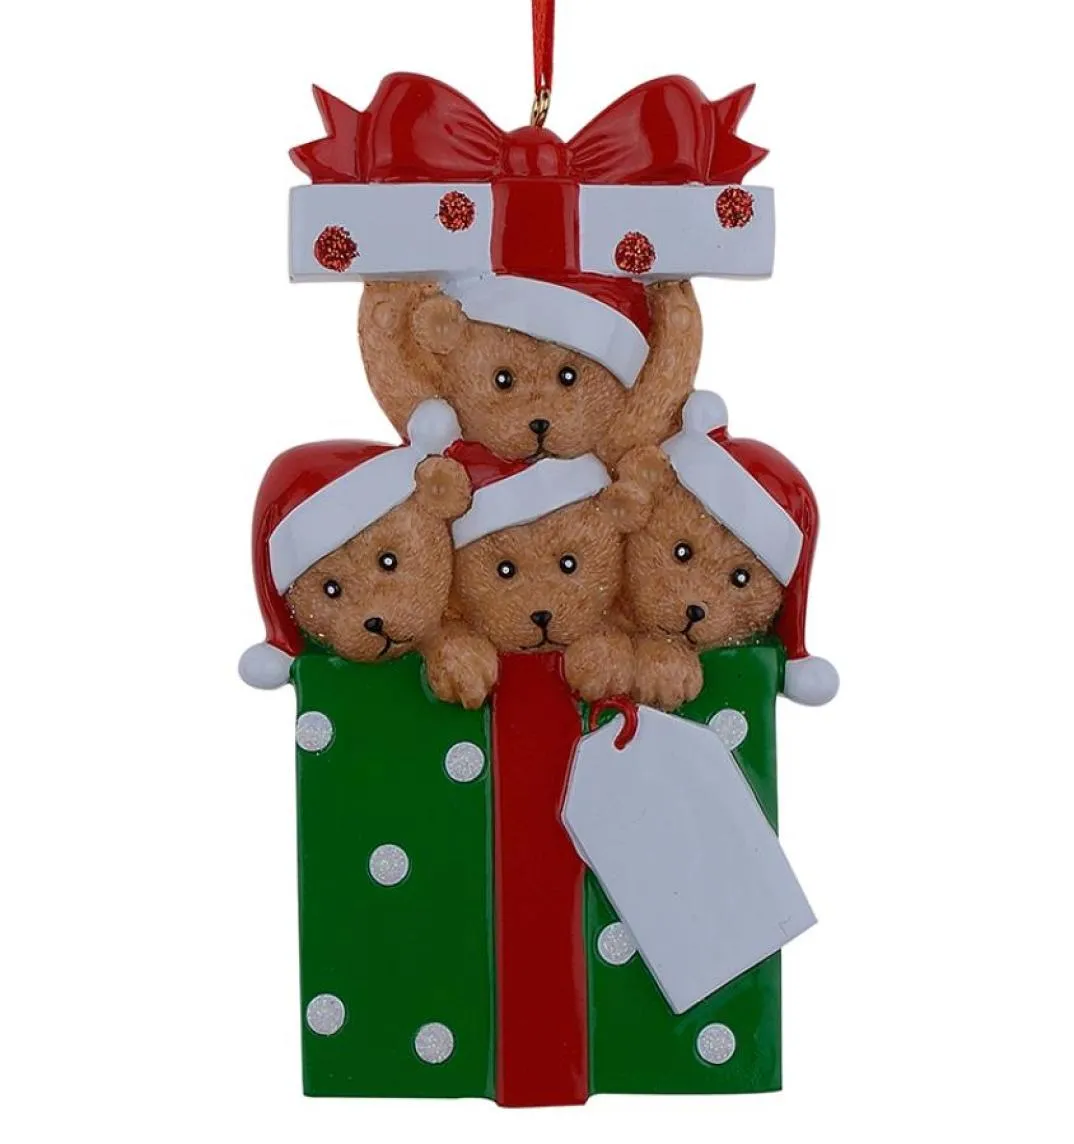 4つのクリスマス装飾品のファミリー全体のファミリーでは、休日や家の装飾のためにあなた自身の名前を書くことができるパーソナライズされたギフト1714046